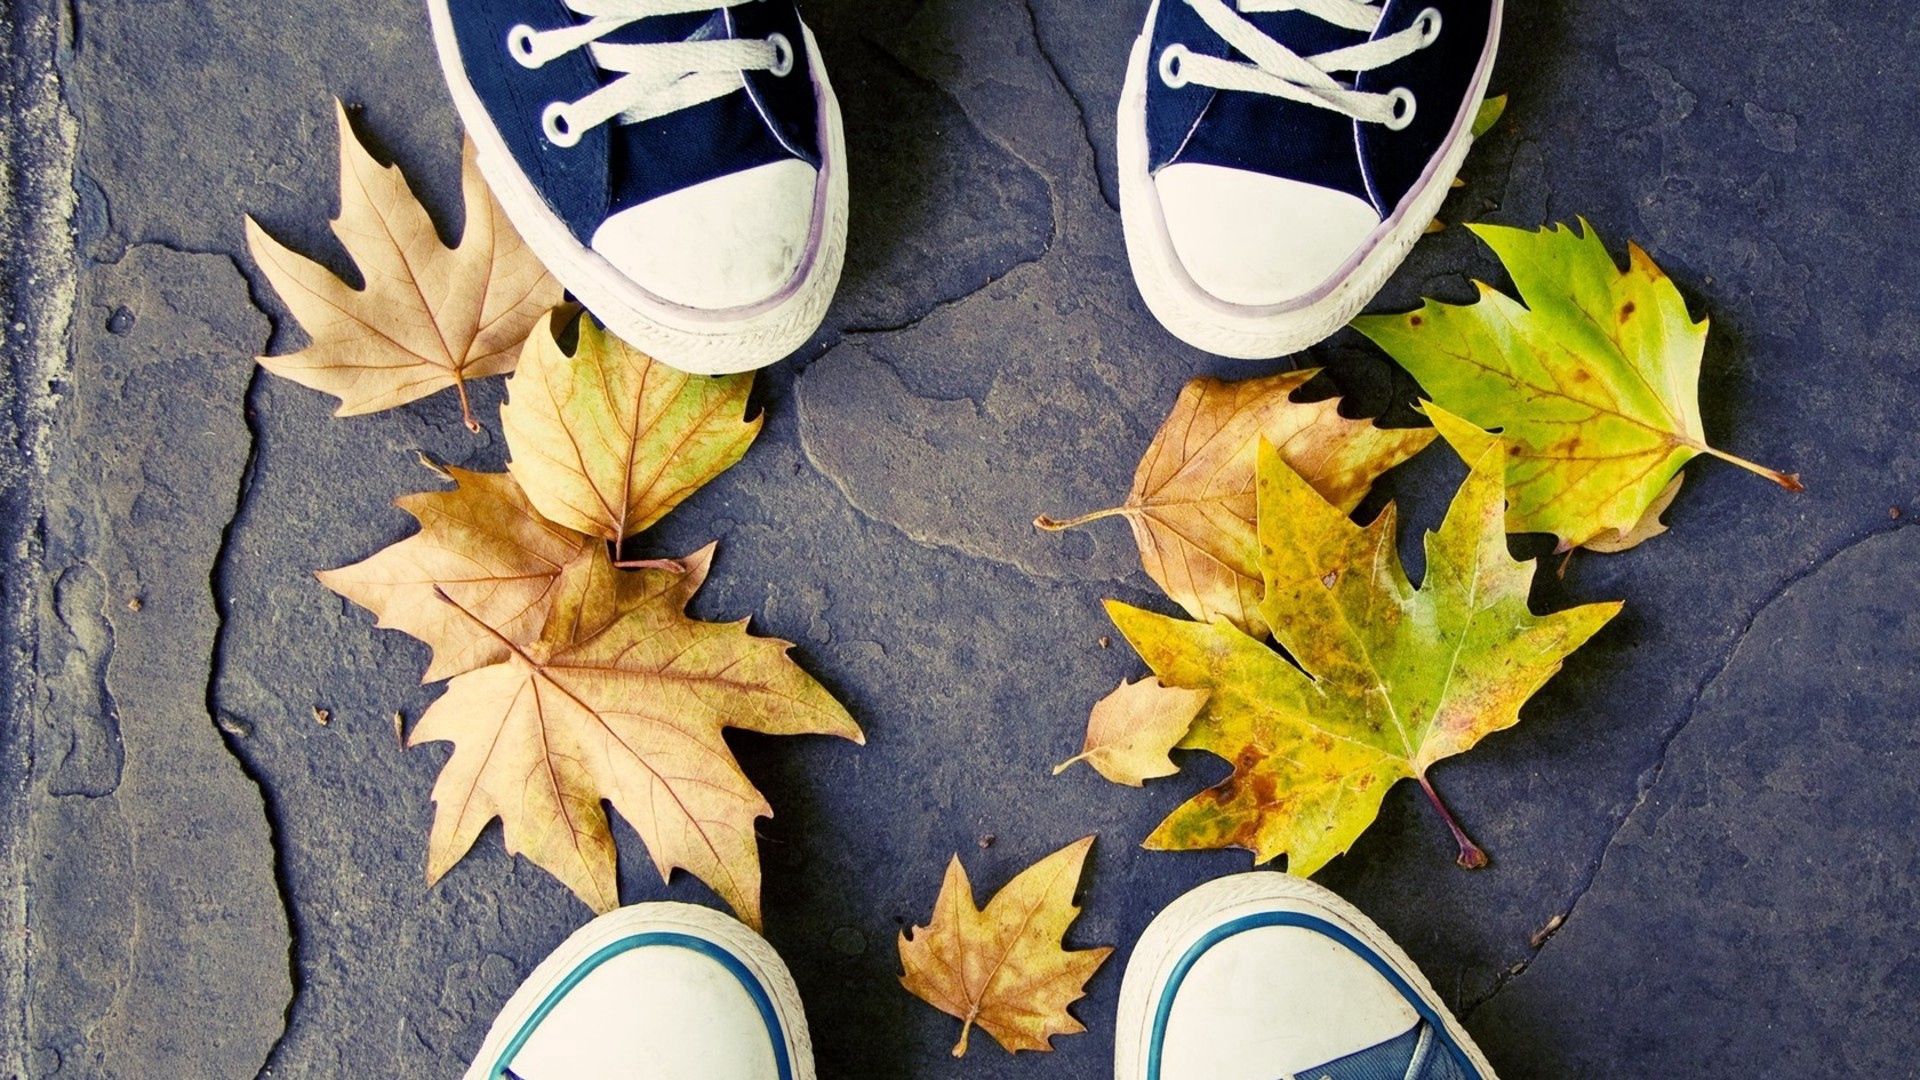 Скачать обои бесплатно Кеды, Ноги, Разное, Листья, Осень картинка на рабочий стол ПК